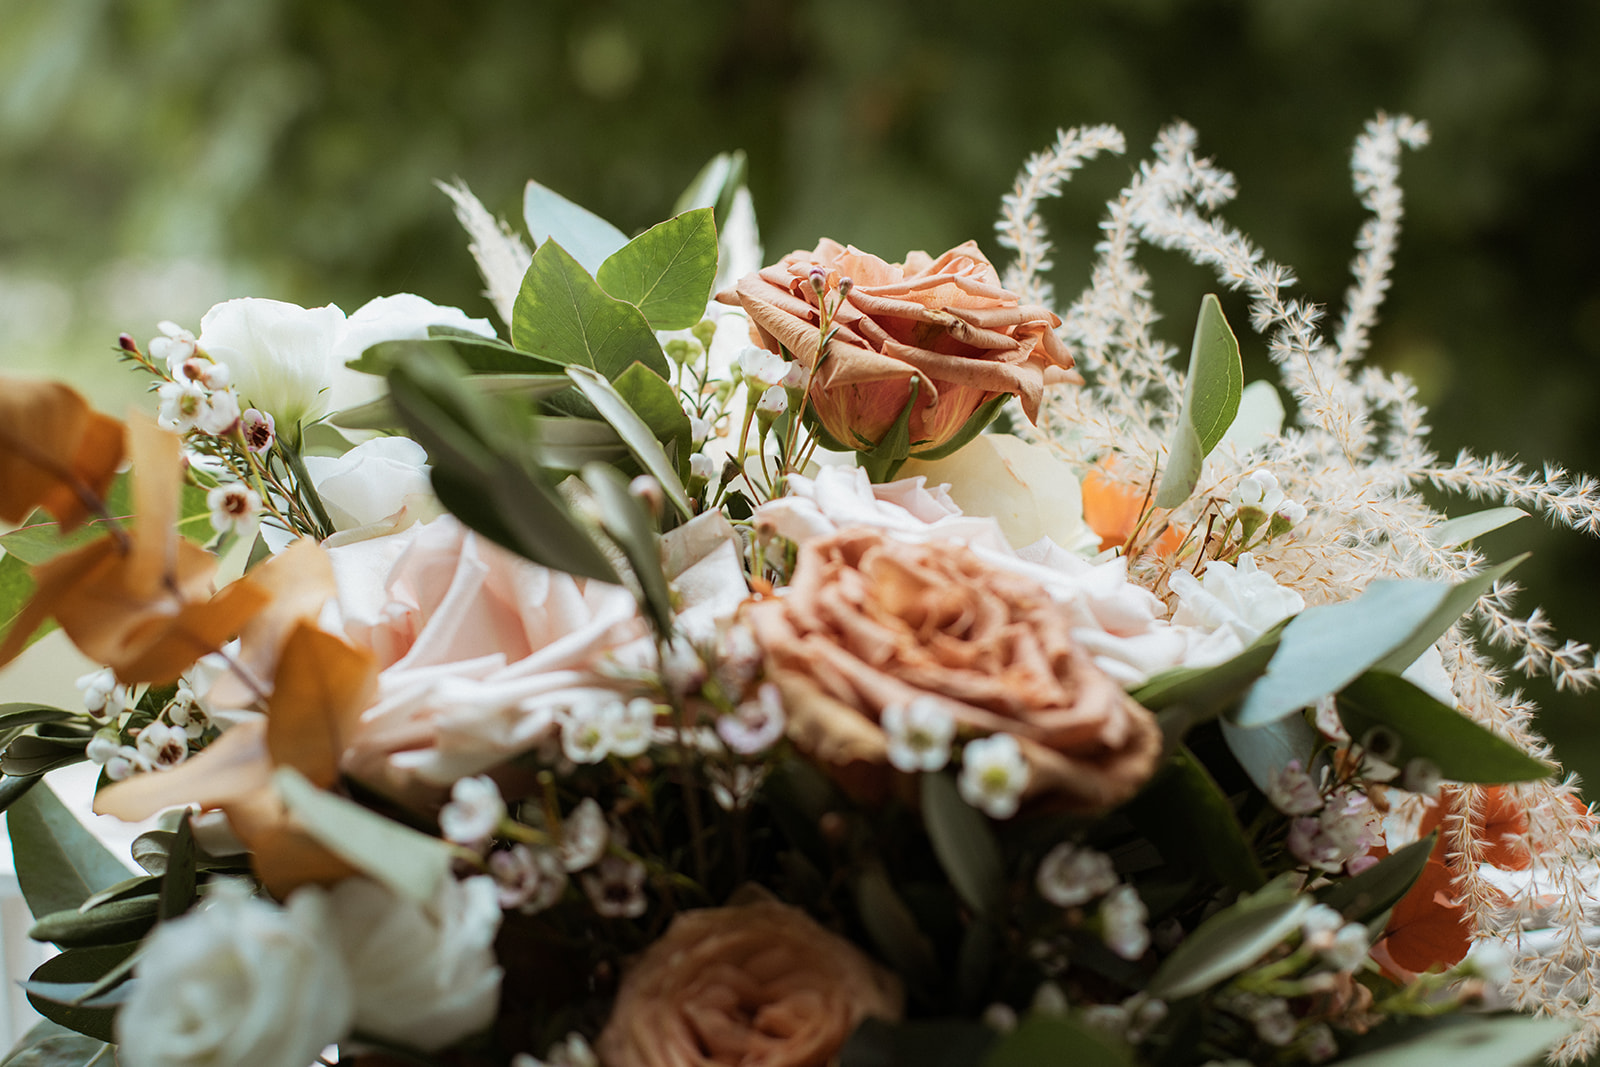 Photographe de mariage dans l'Ain, le bouquet de la mariée